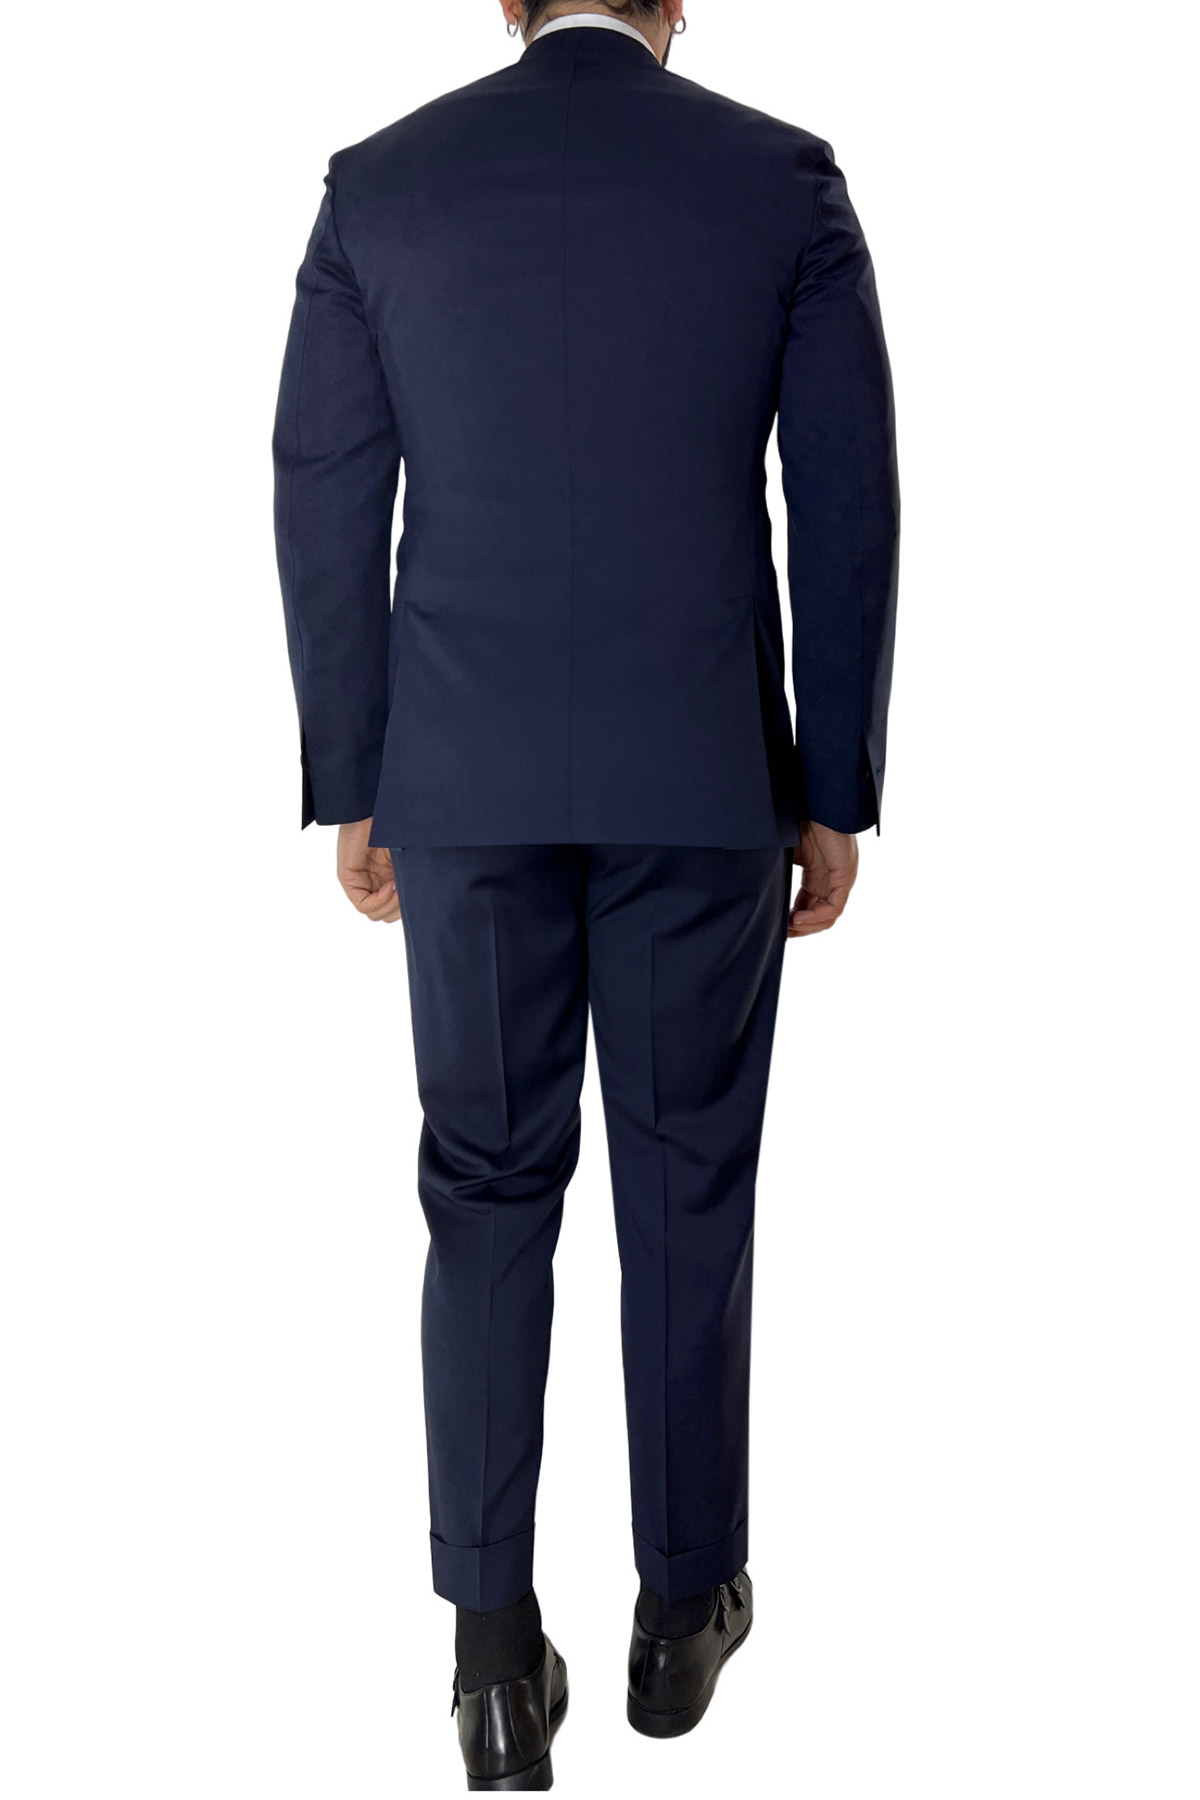 Abito uomo navy blu con giacca monopetto e pantalone vita alta doppia pinces fresco lana super 130’s Vitale Barberis Canonico